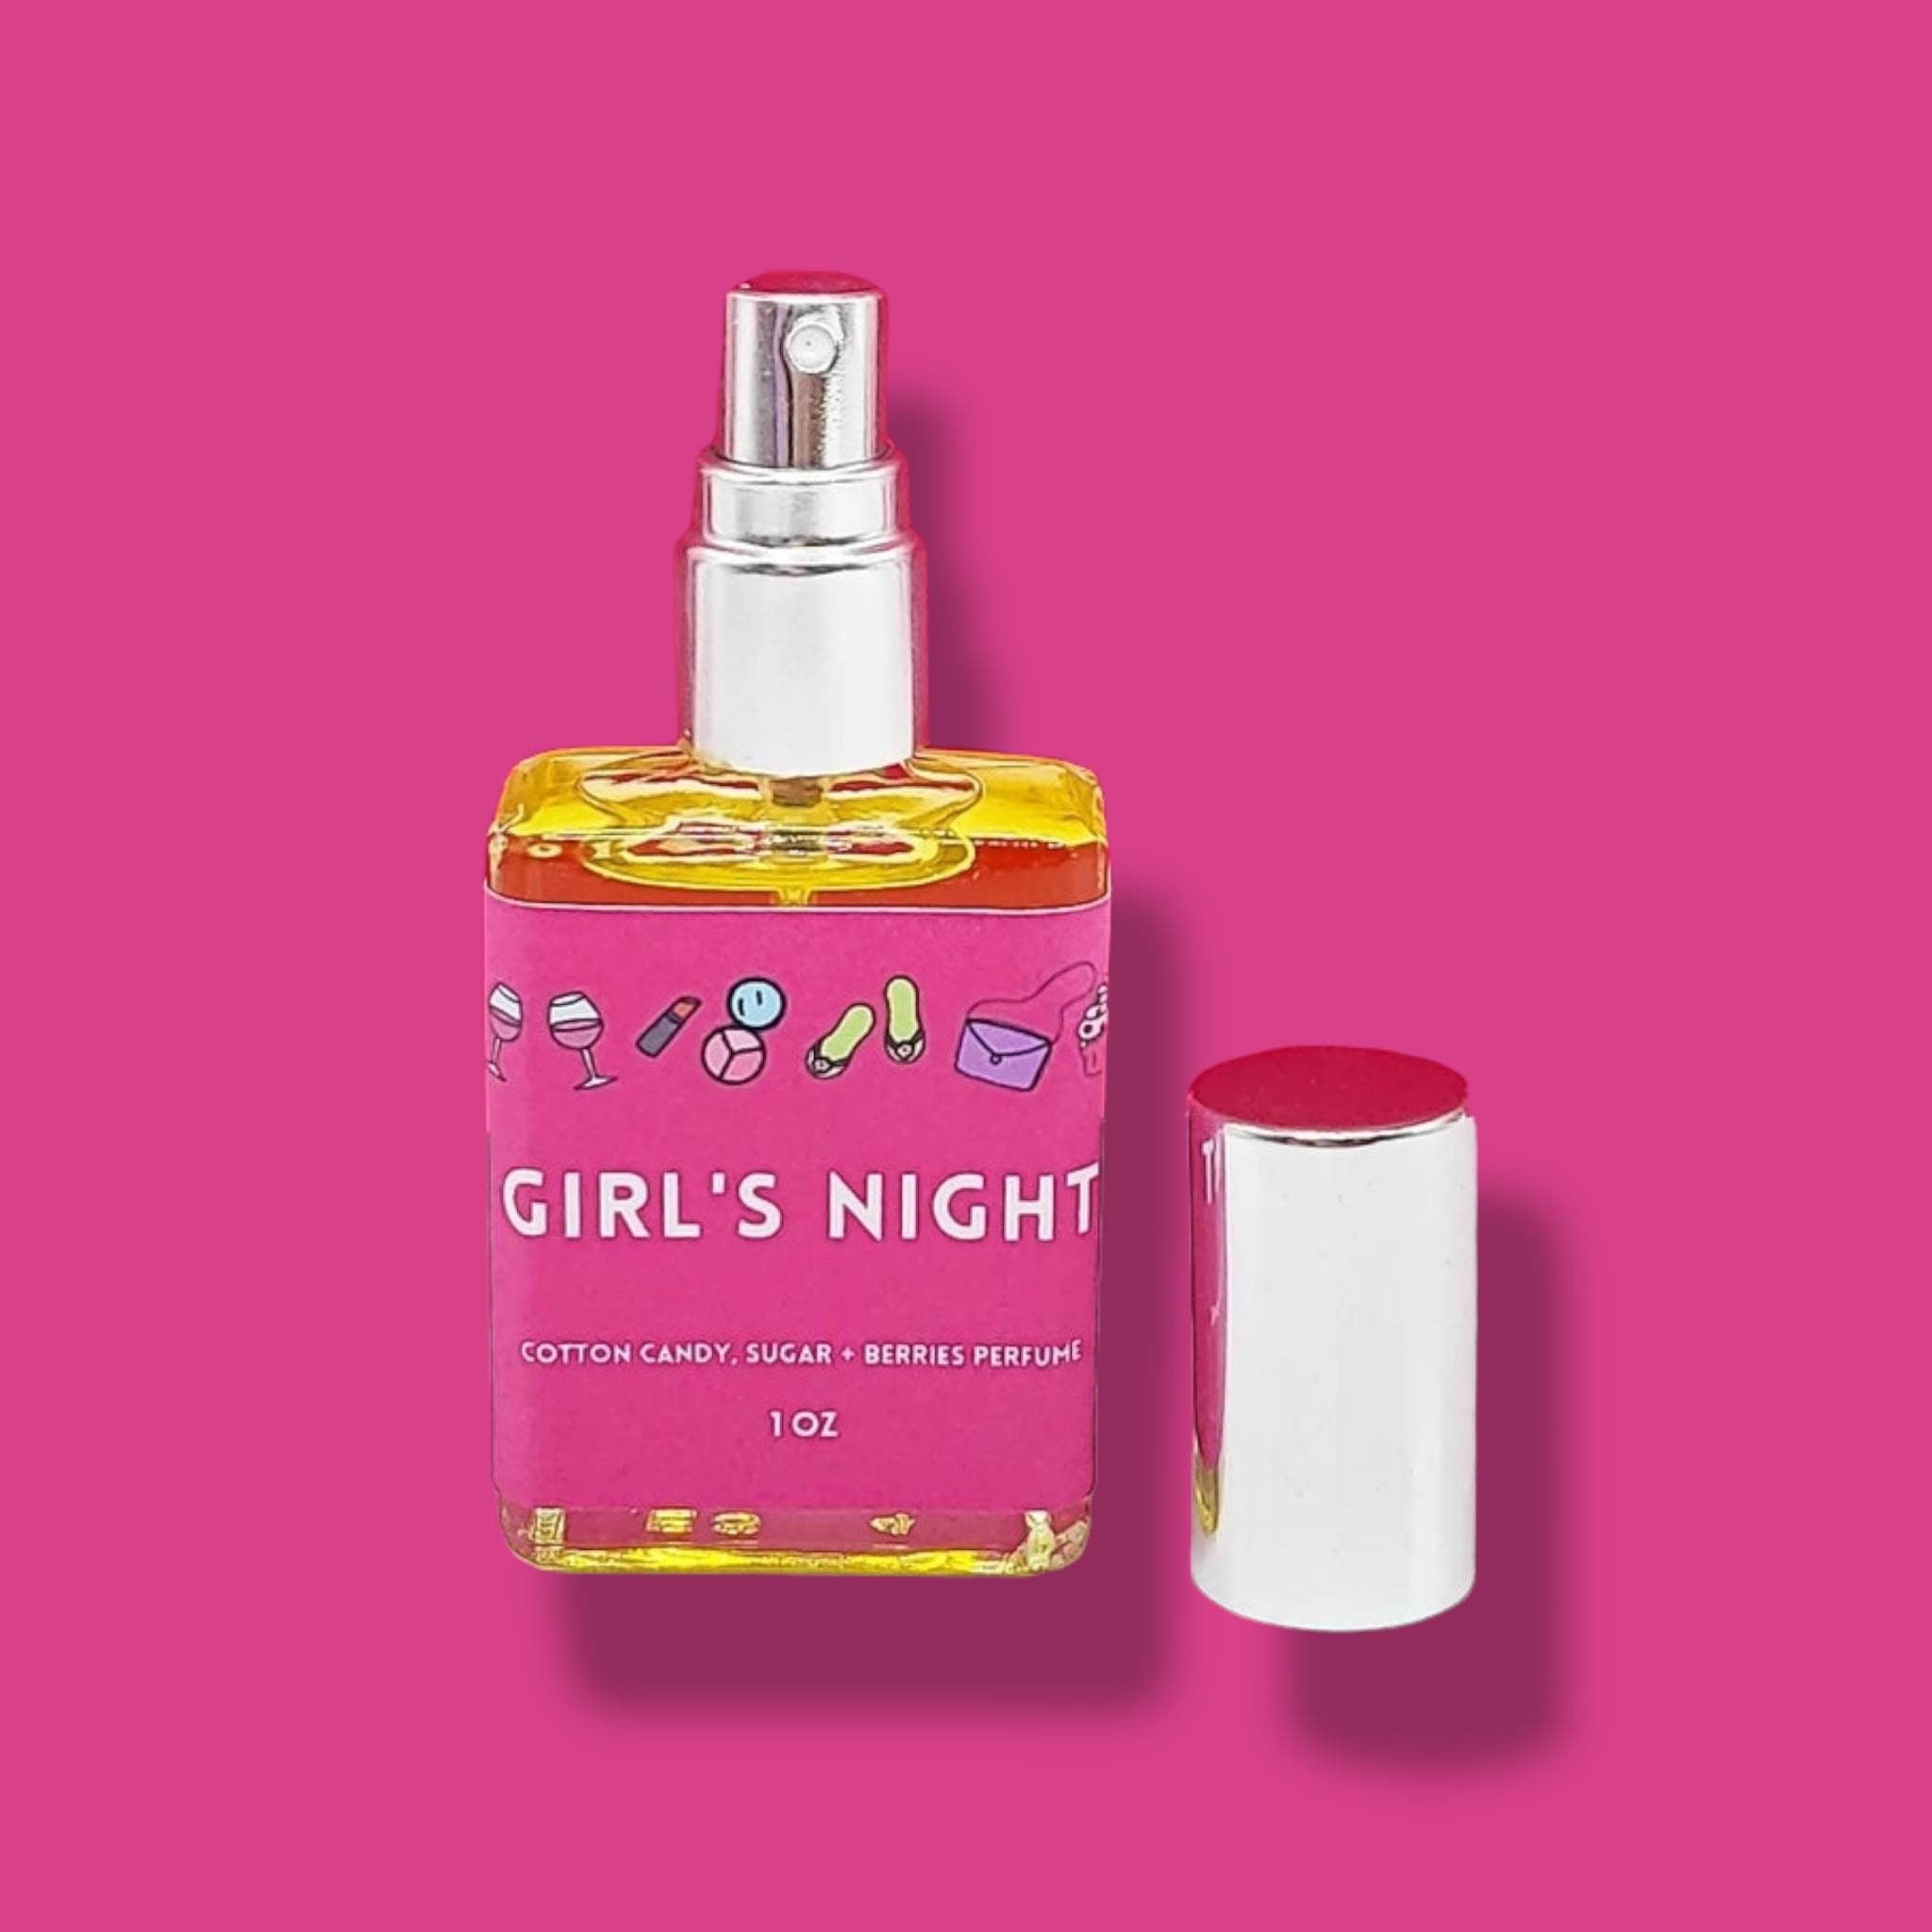 Sweet Night Colorful Shimmer Body Mist Perfume 65ml For Men Women Gift